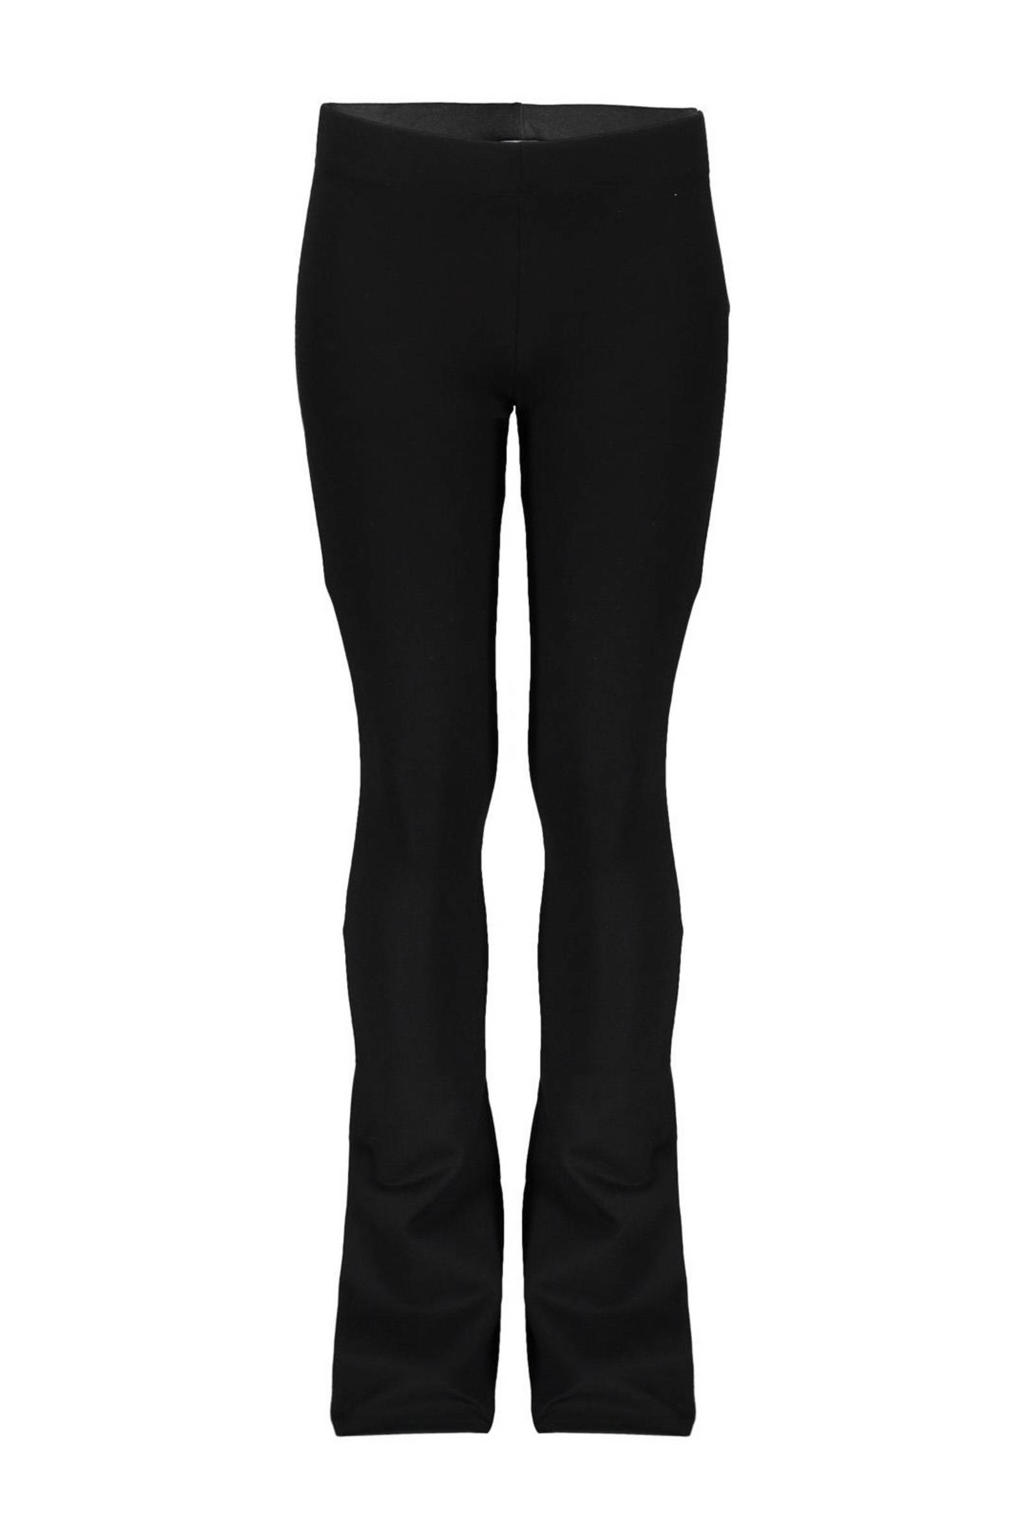 Zwarte meisjes Geisha flared broek van polyester met regular waist en elastische tailleband